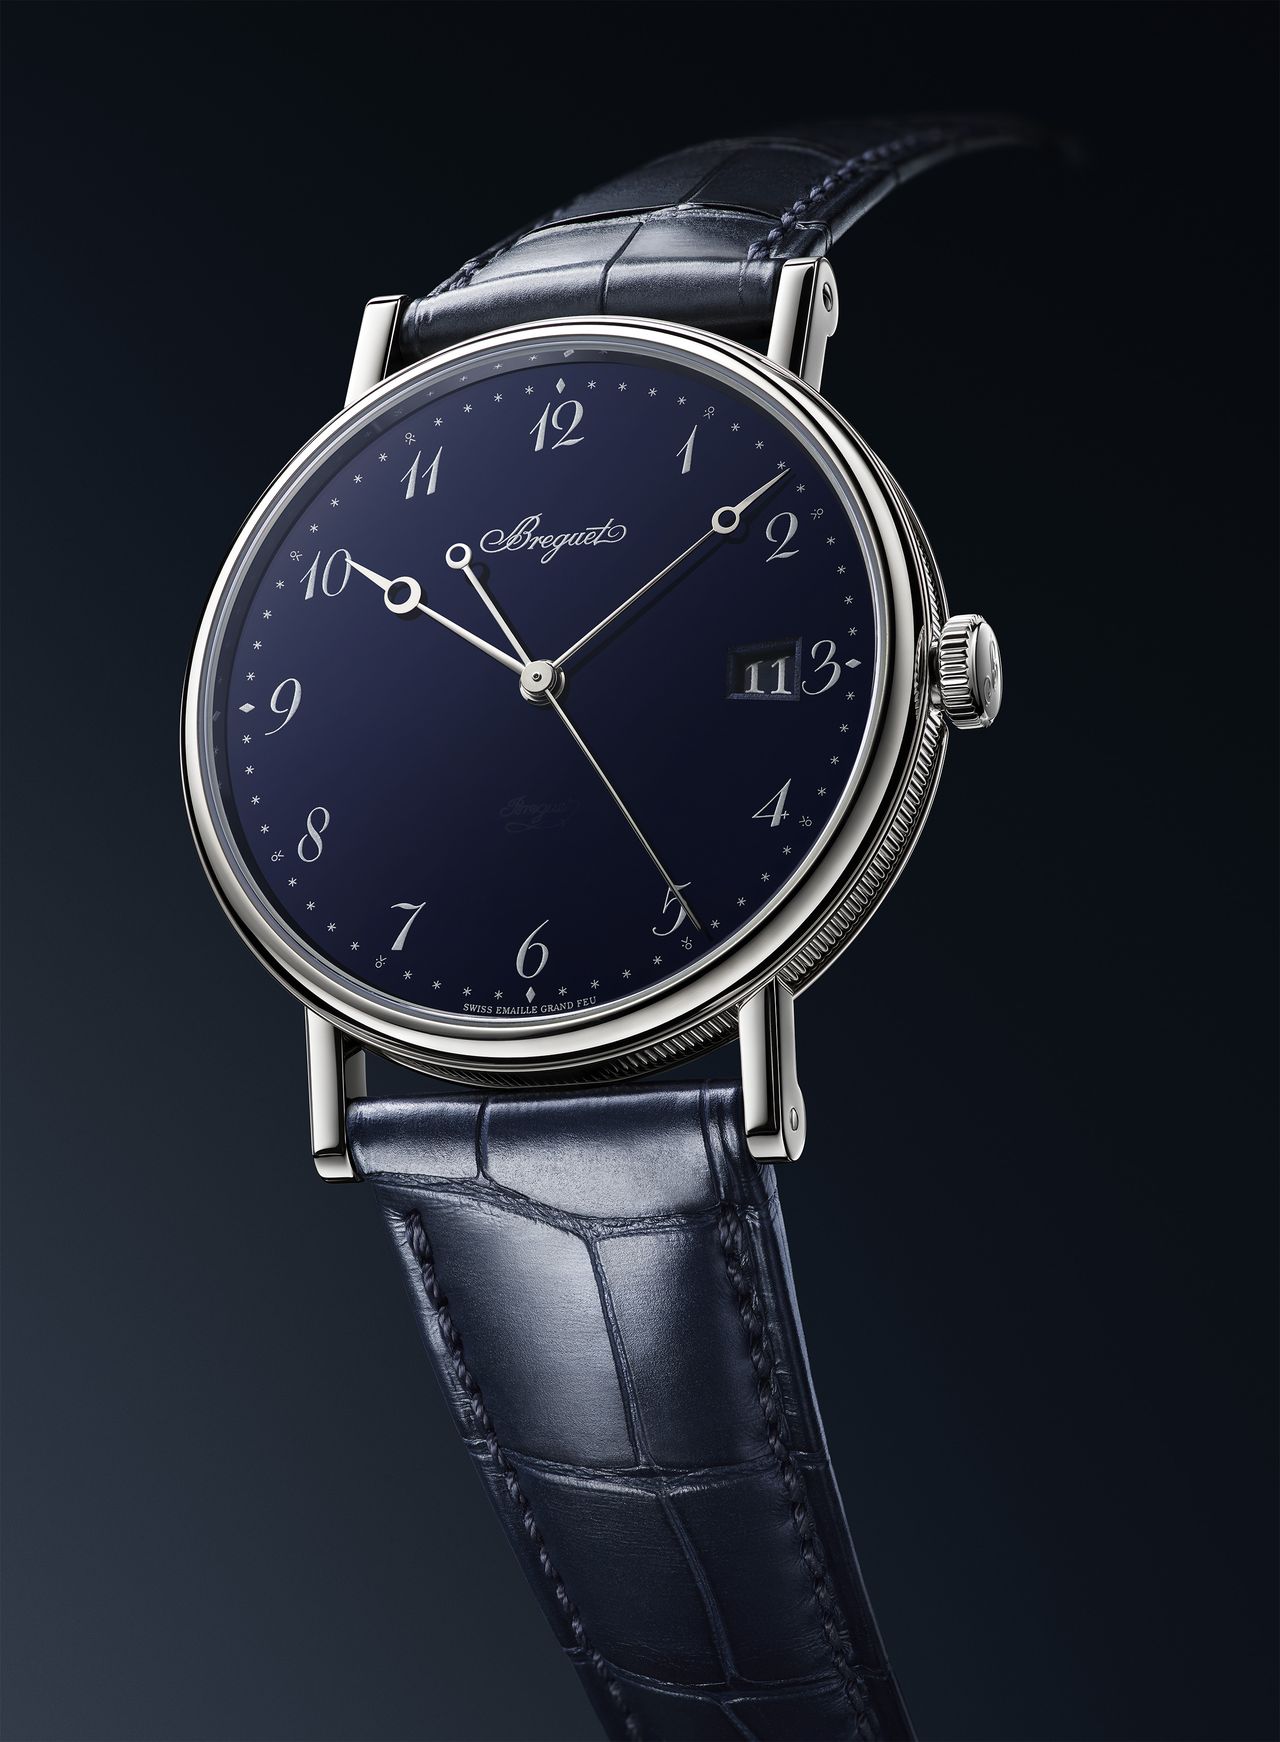 Breguet Classique 5177 Grand Feu Blue Enamel - a szinte üresnek ható számlap miatt nagyobbnak látjuk az órát, pedig csak 38 mm az átmérője